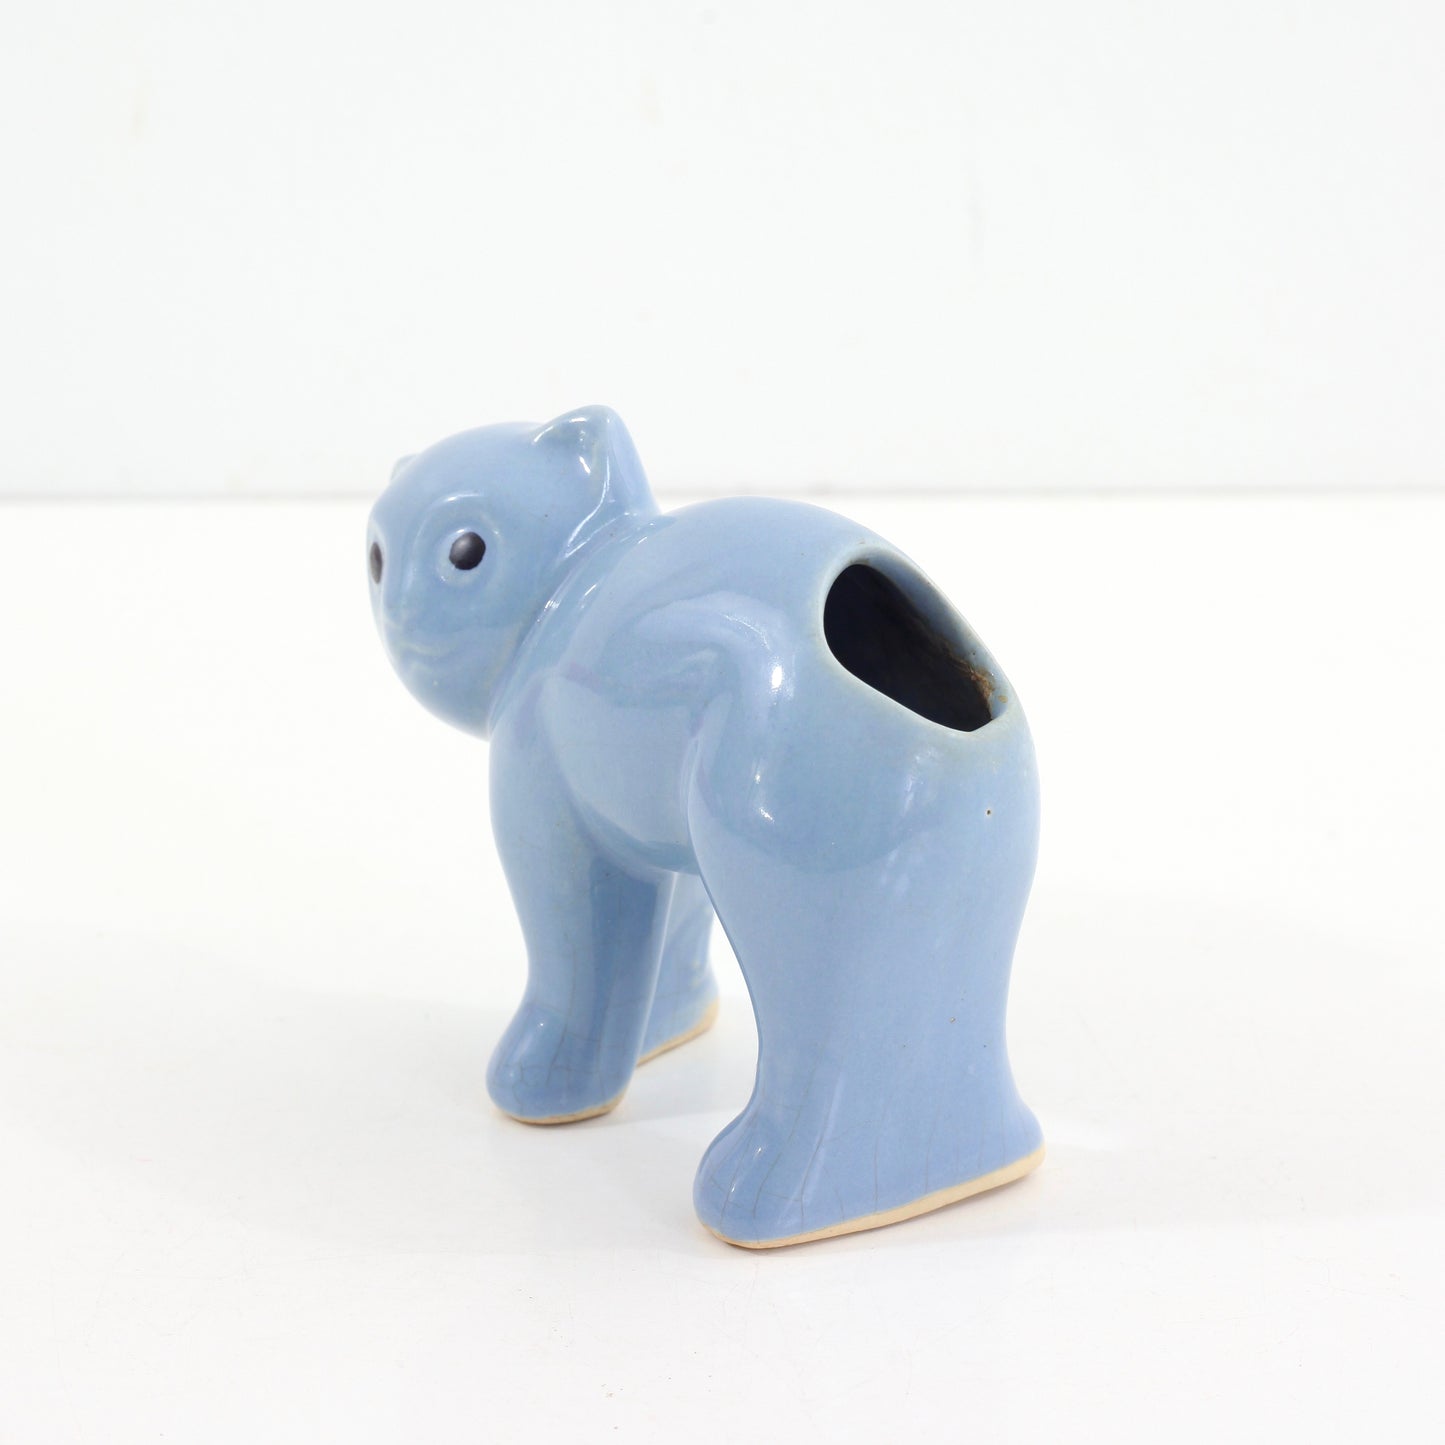 SOLD - Vintage 1940s Morton Pottery Cat Planter / Periwinkle Blue Ceramic Cat Vase